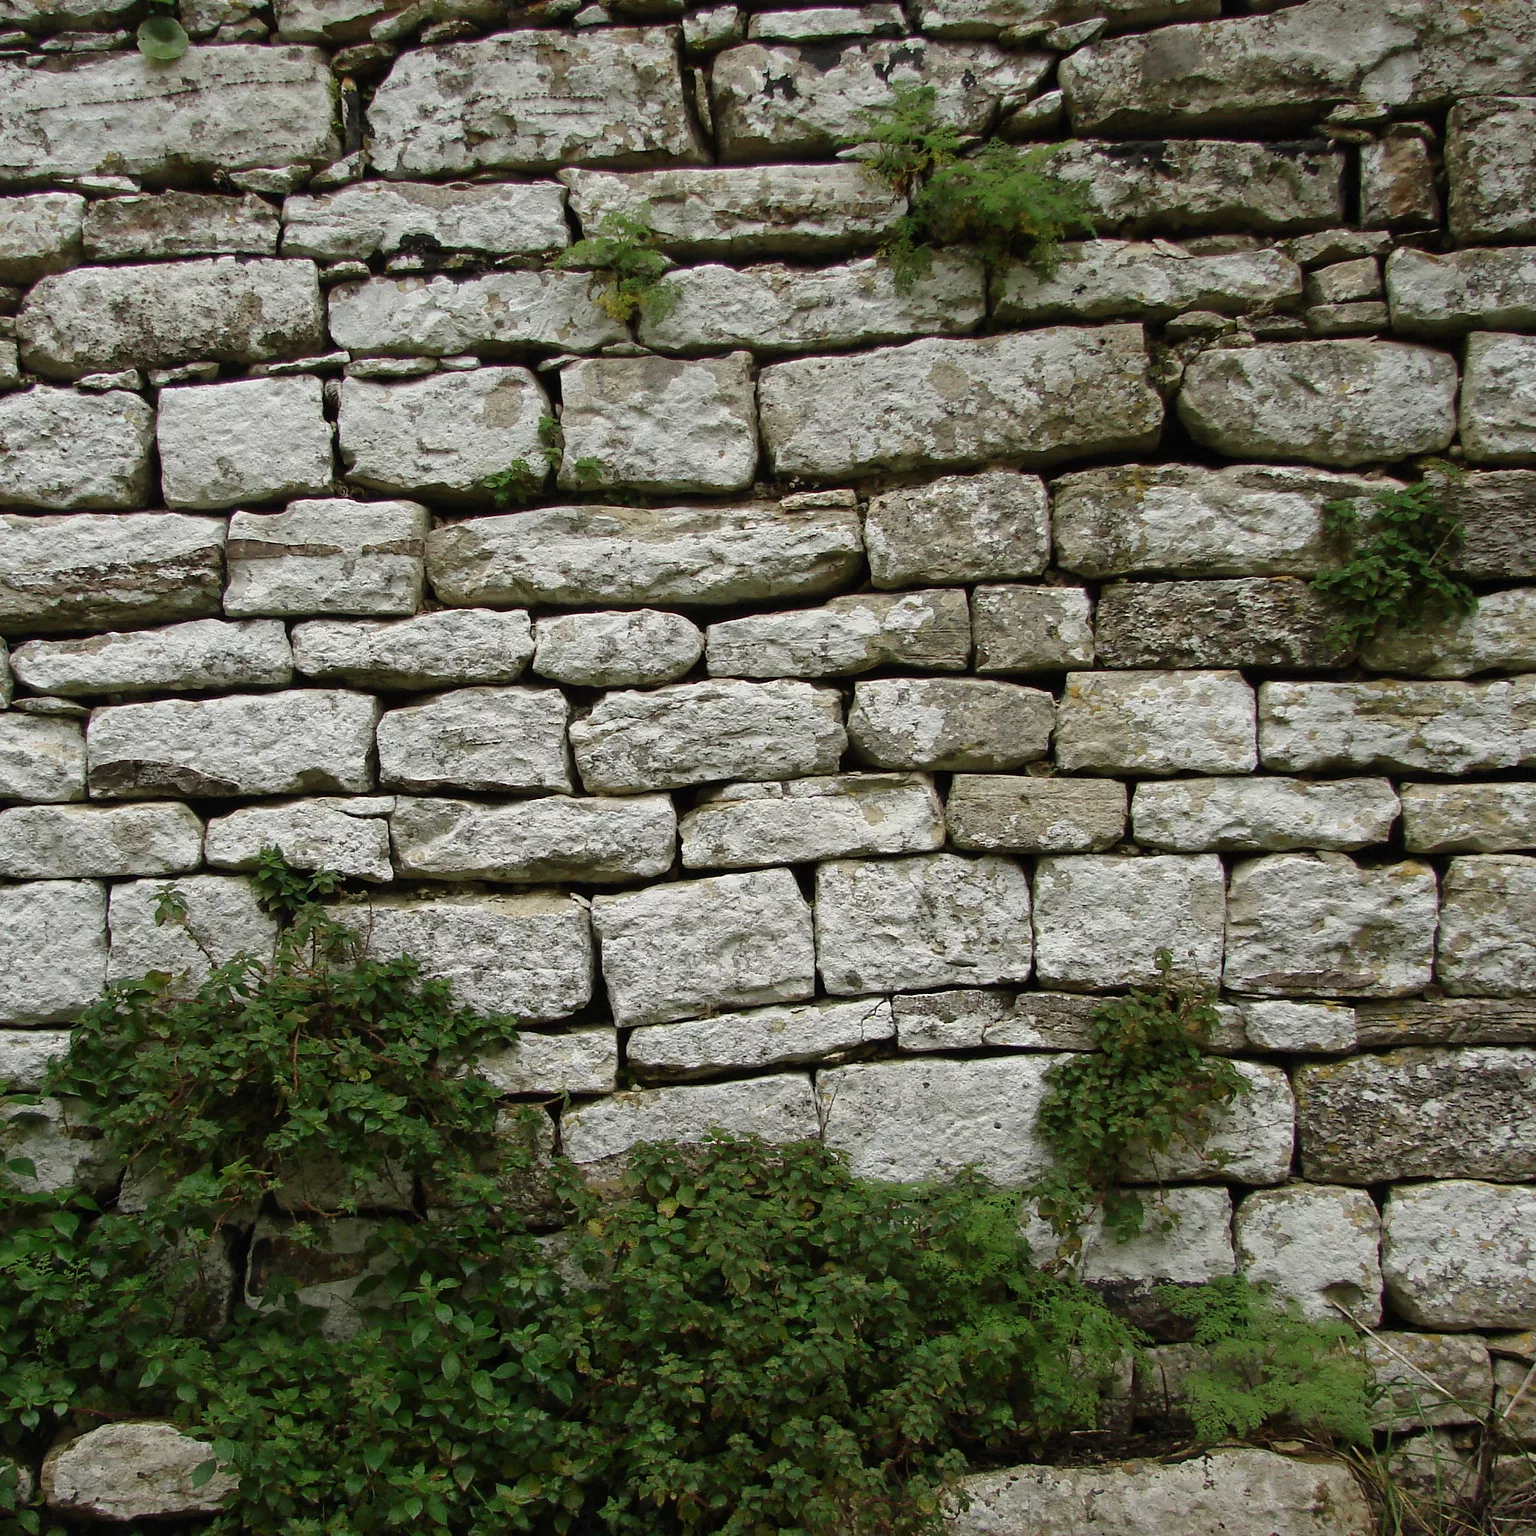 Cyclopean walls in Sicily